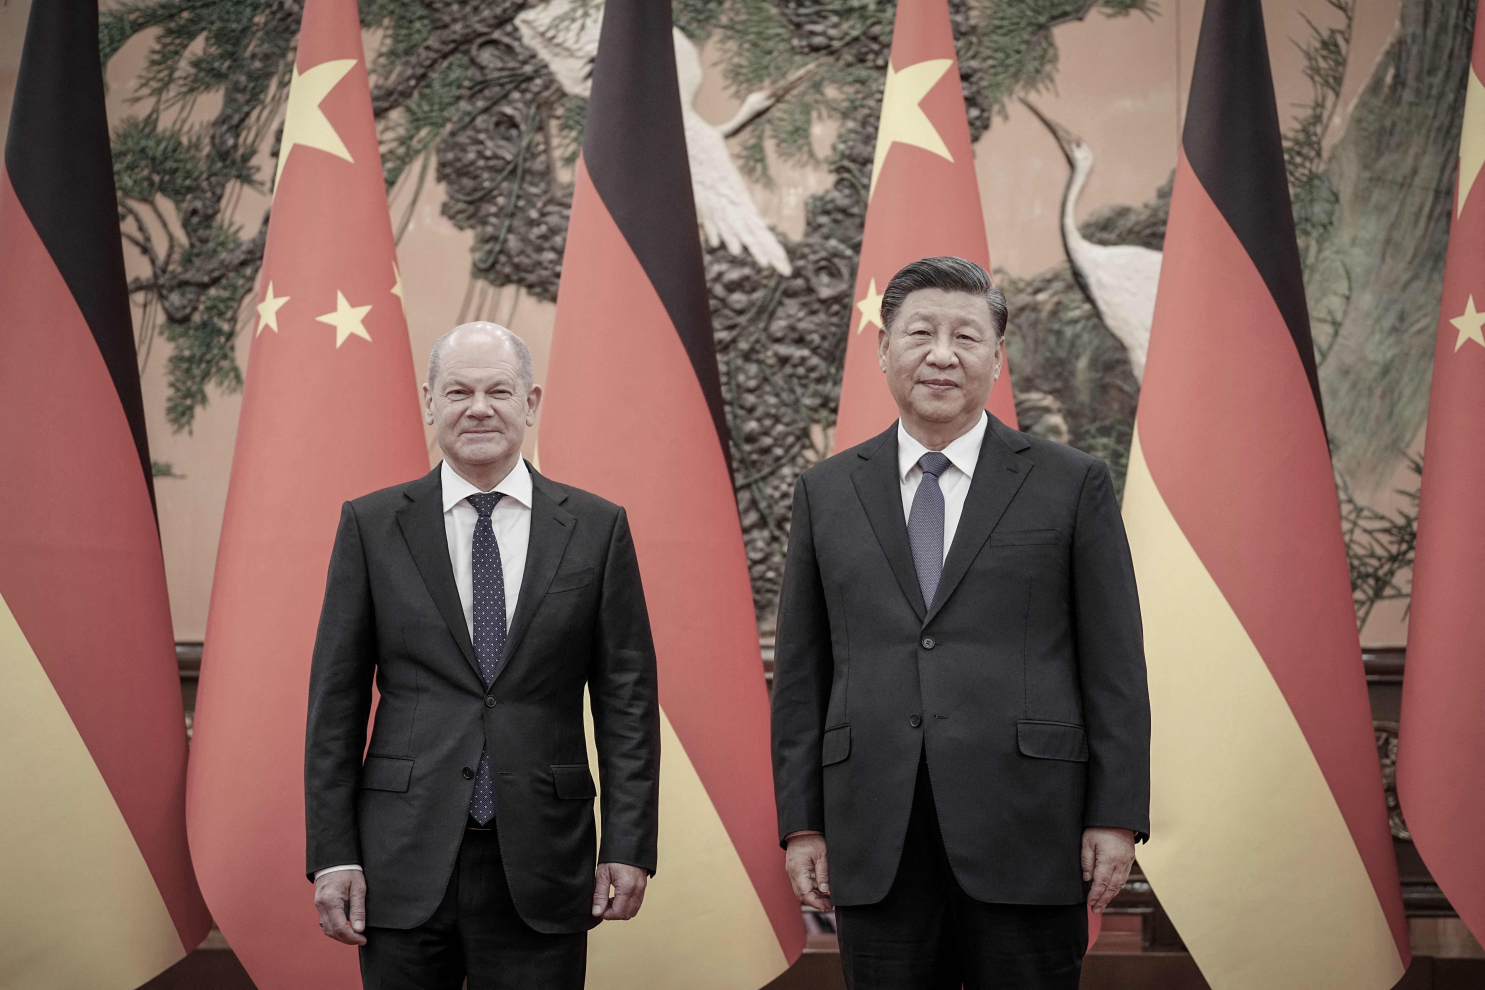 Thủ tướng Đức thăm Trung Quốc giữa những vấn đề 'nổi cộm' về nhân quyền